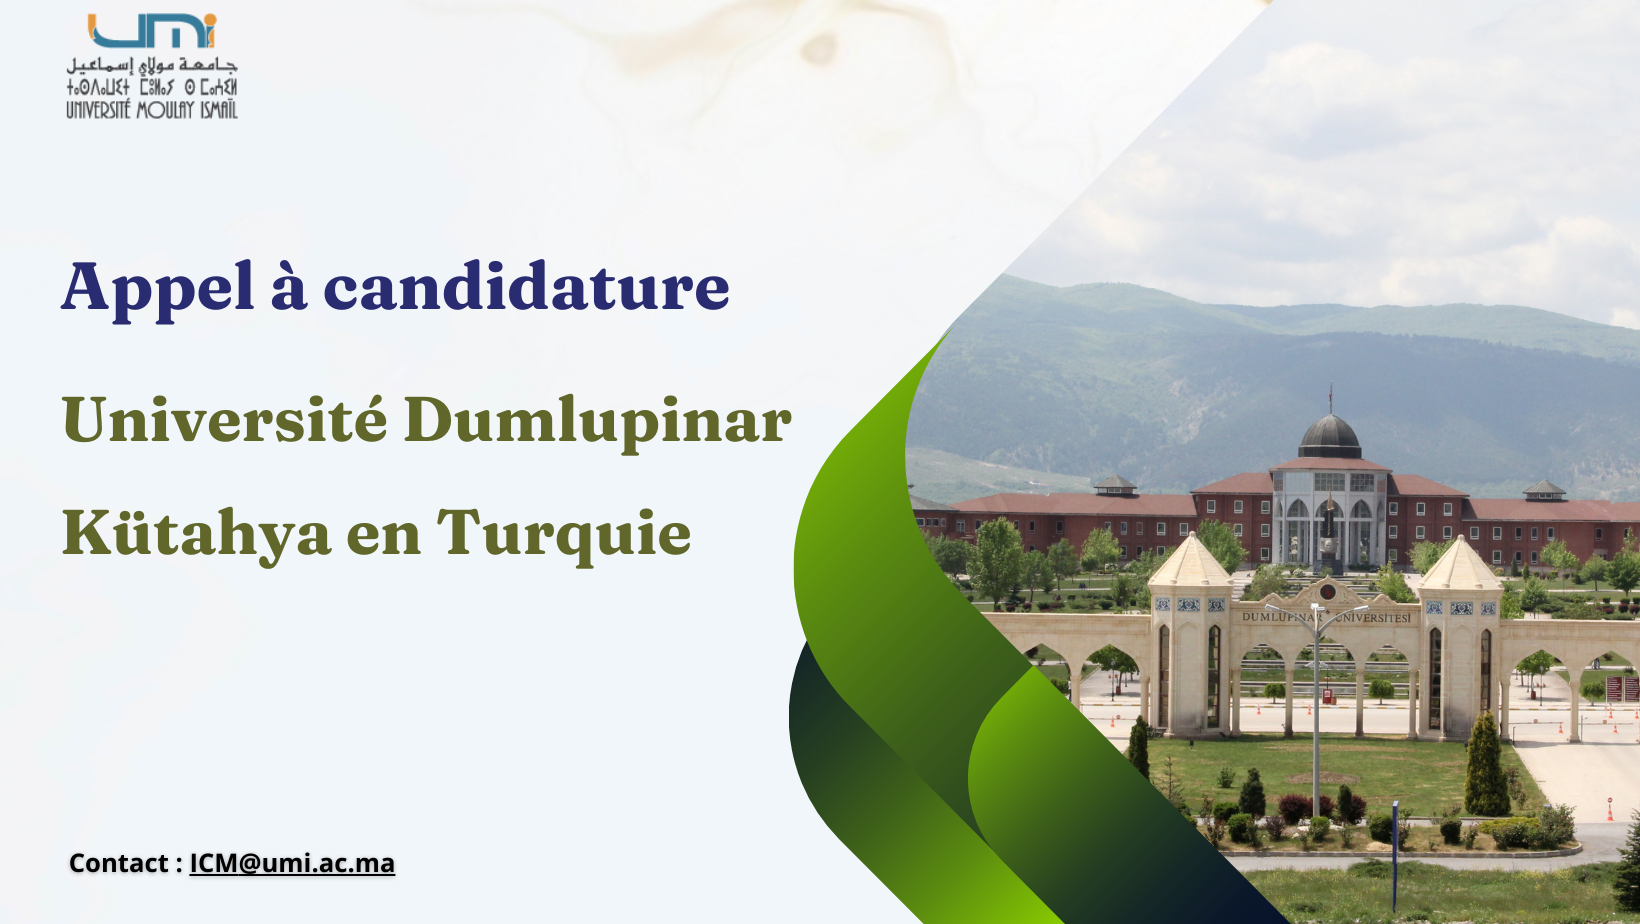 Appel à candidature pour la mobilité Erasmus+ (KA 171) à l’Université Dumlupinar à Kütahya en Turquie